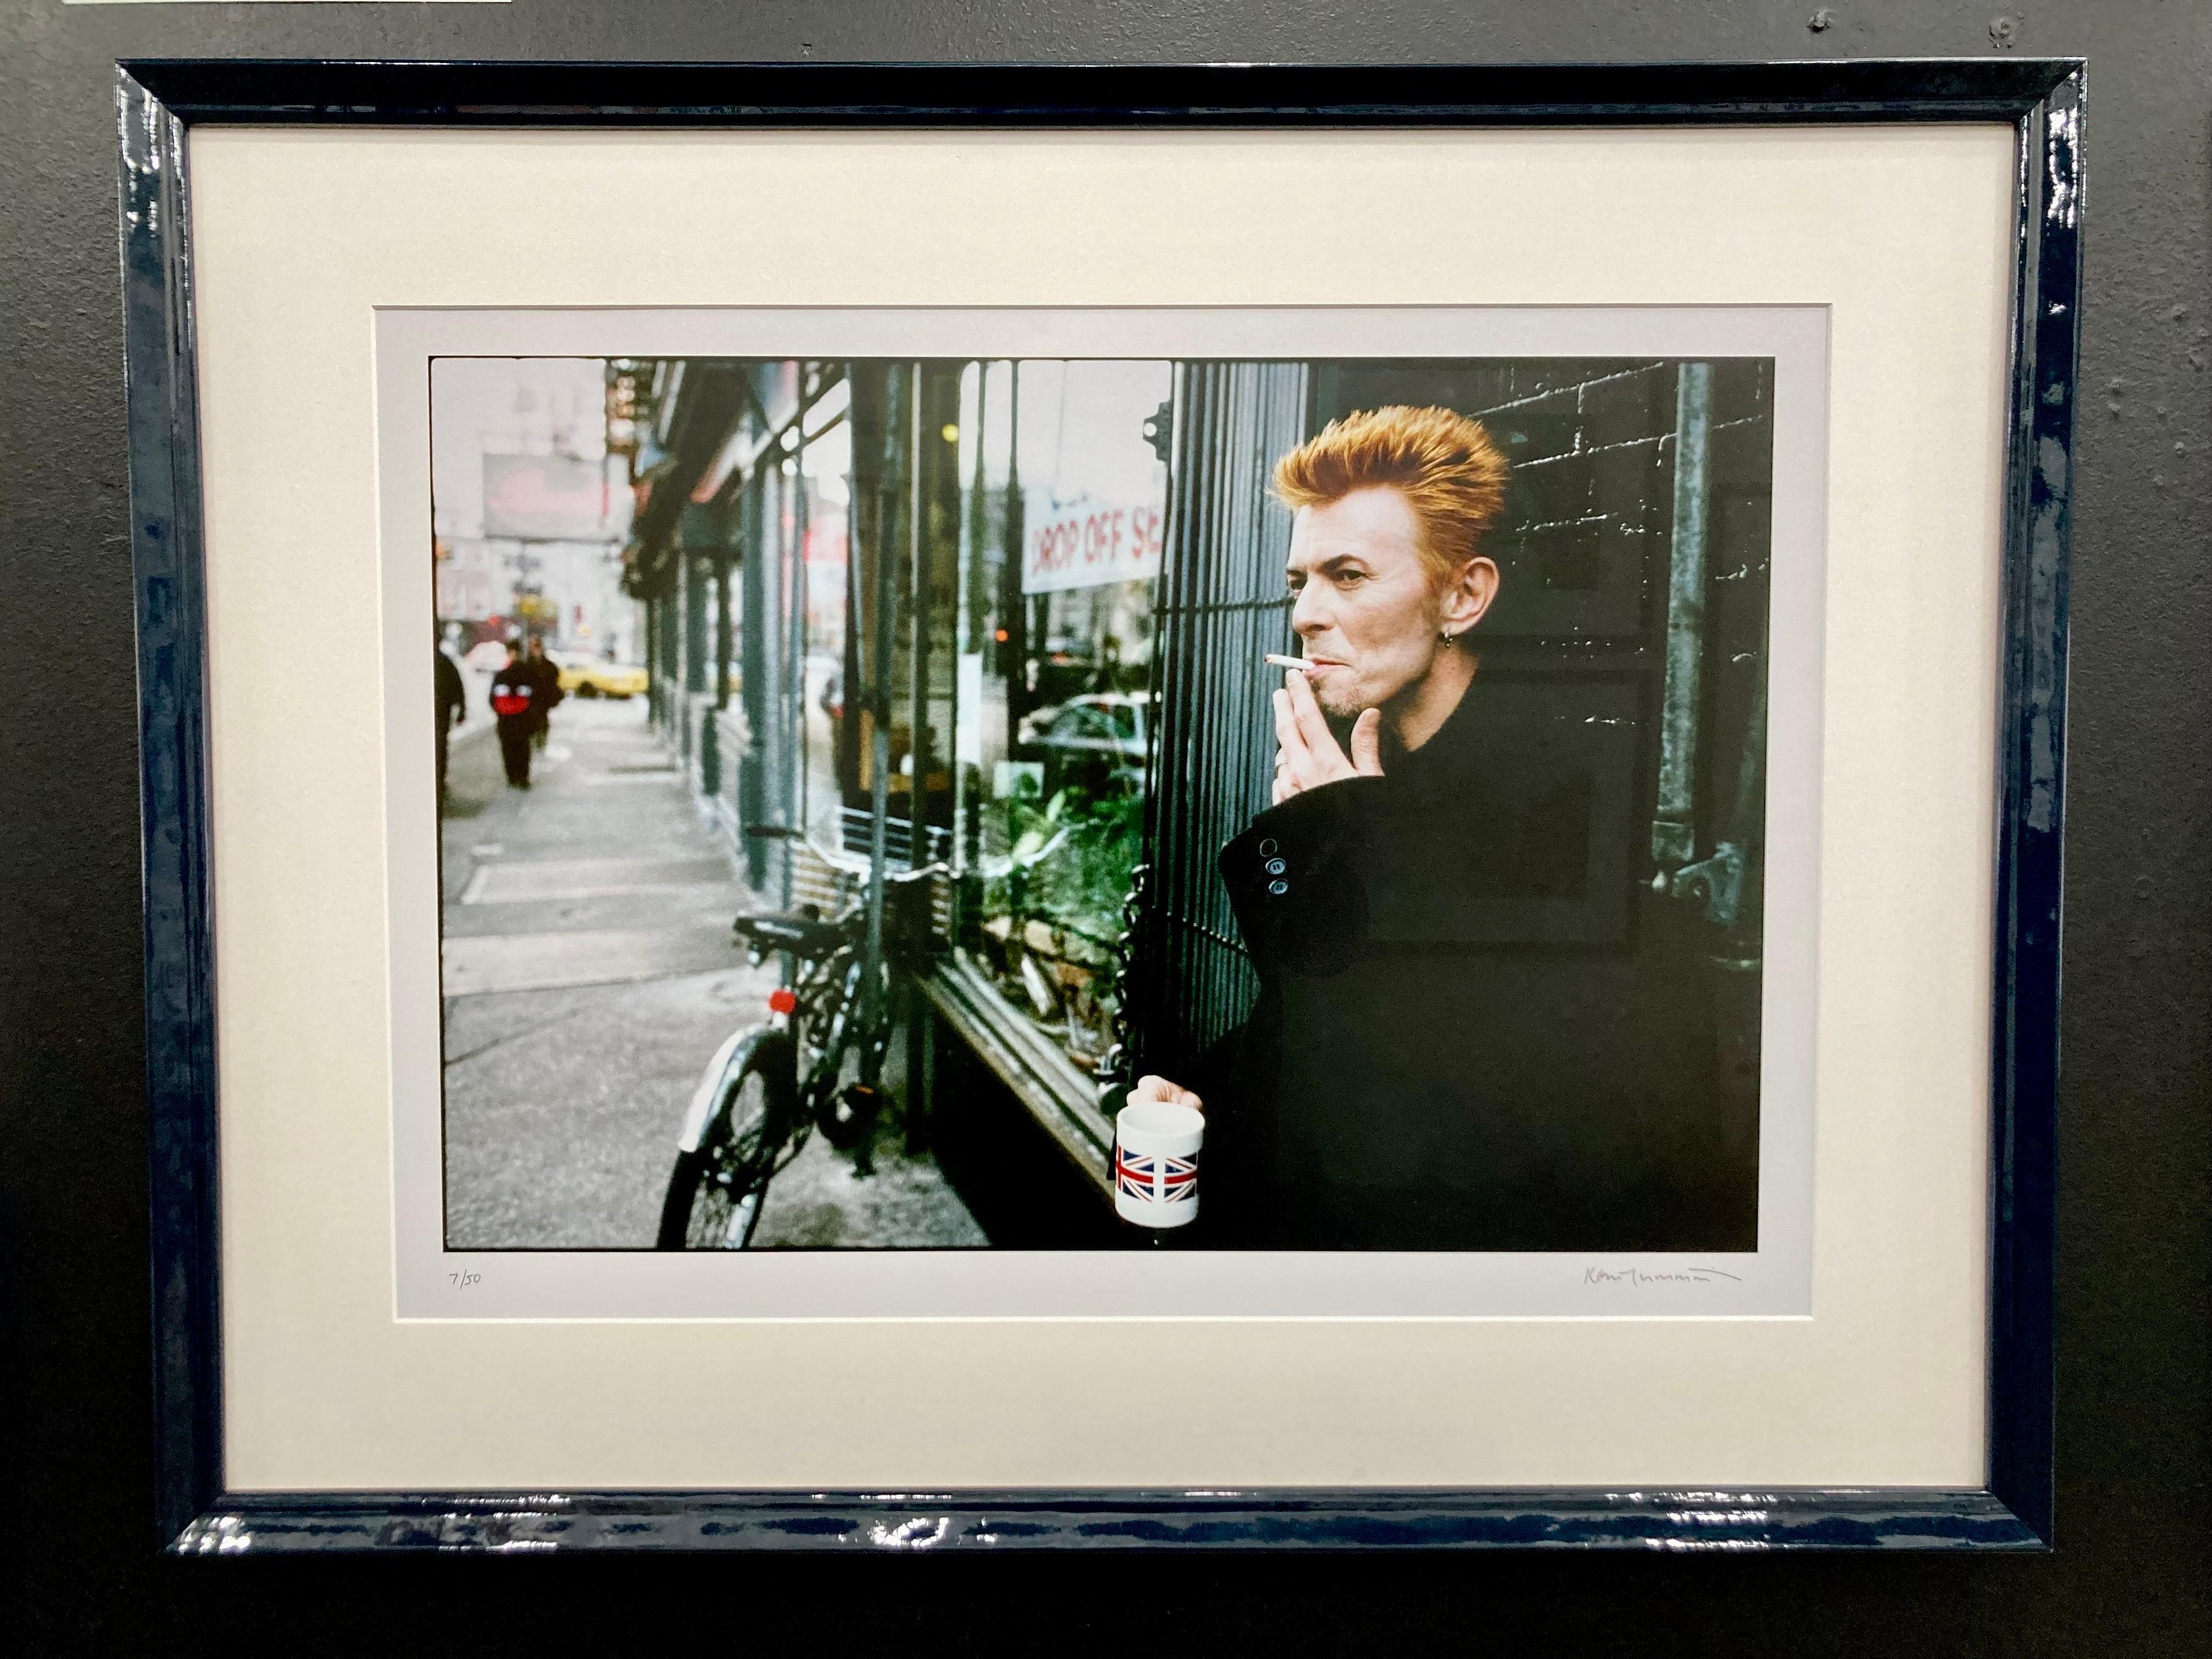 David Bowie Tea and Sympathy New York City, impression encadrée signée à tirage limité - Photograph de Kevin Cummins